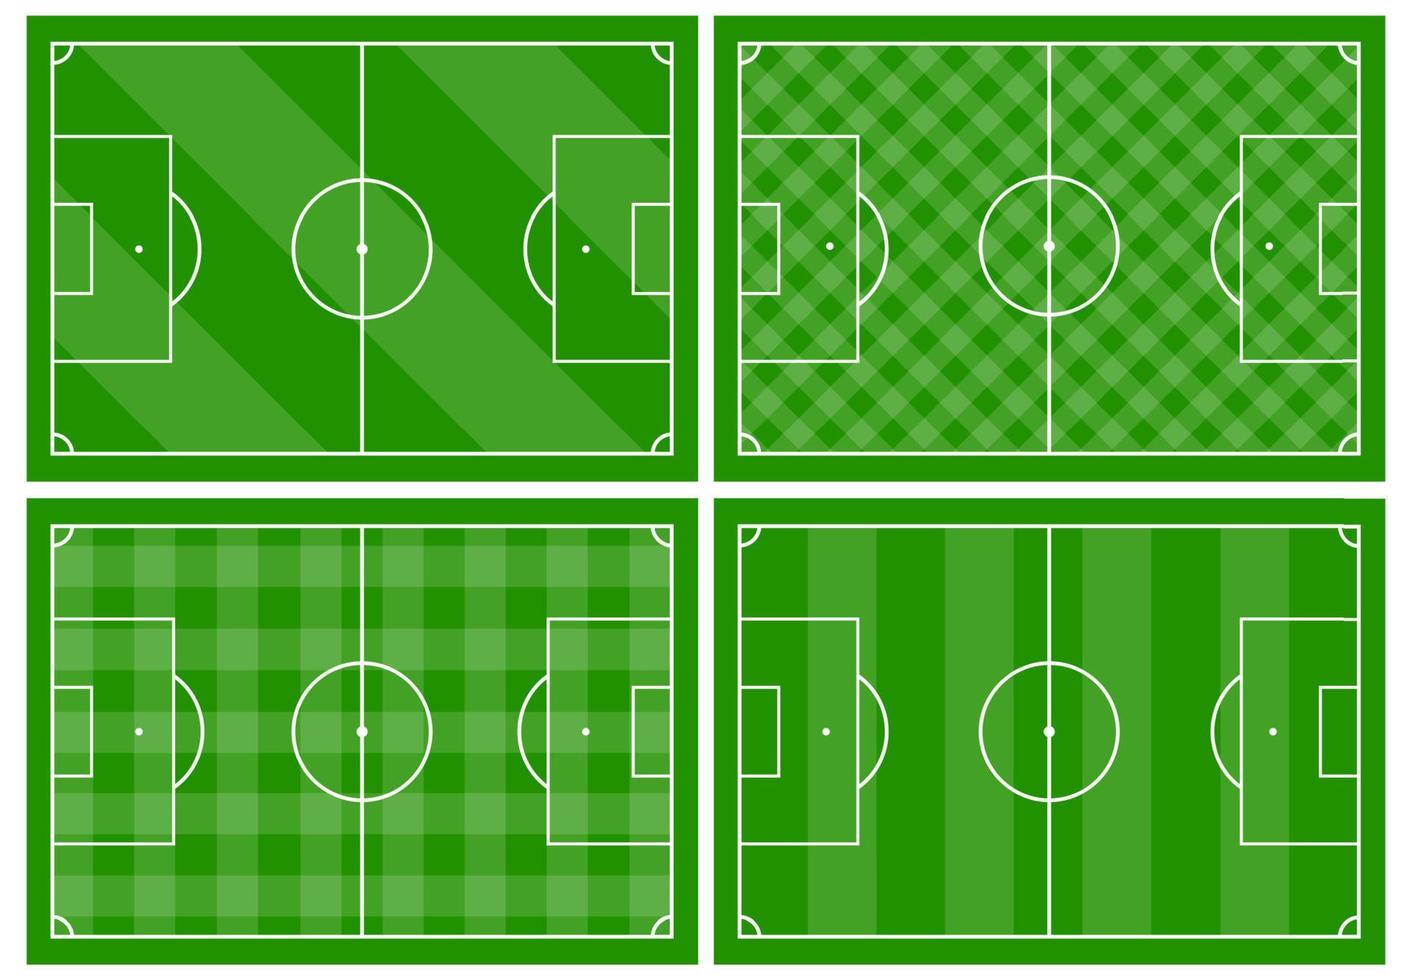 impostato di quattro calcio i campi con diverso verde erba ornamenti. calcio campo per giocando. vettore illustrazione